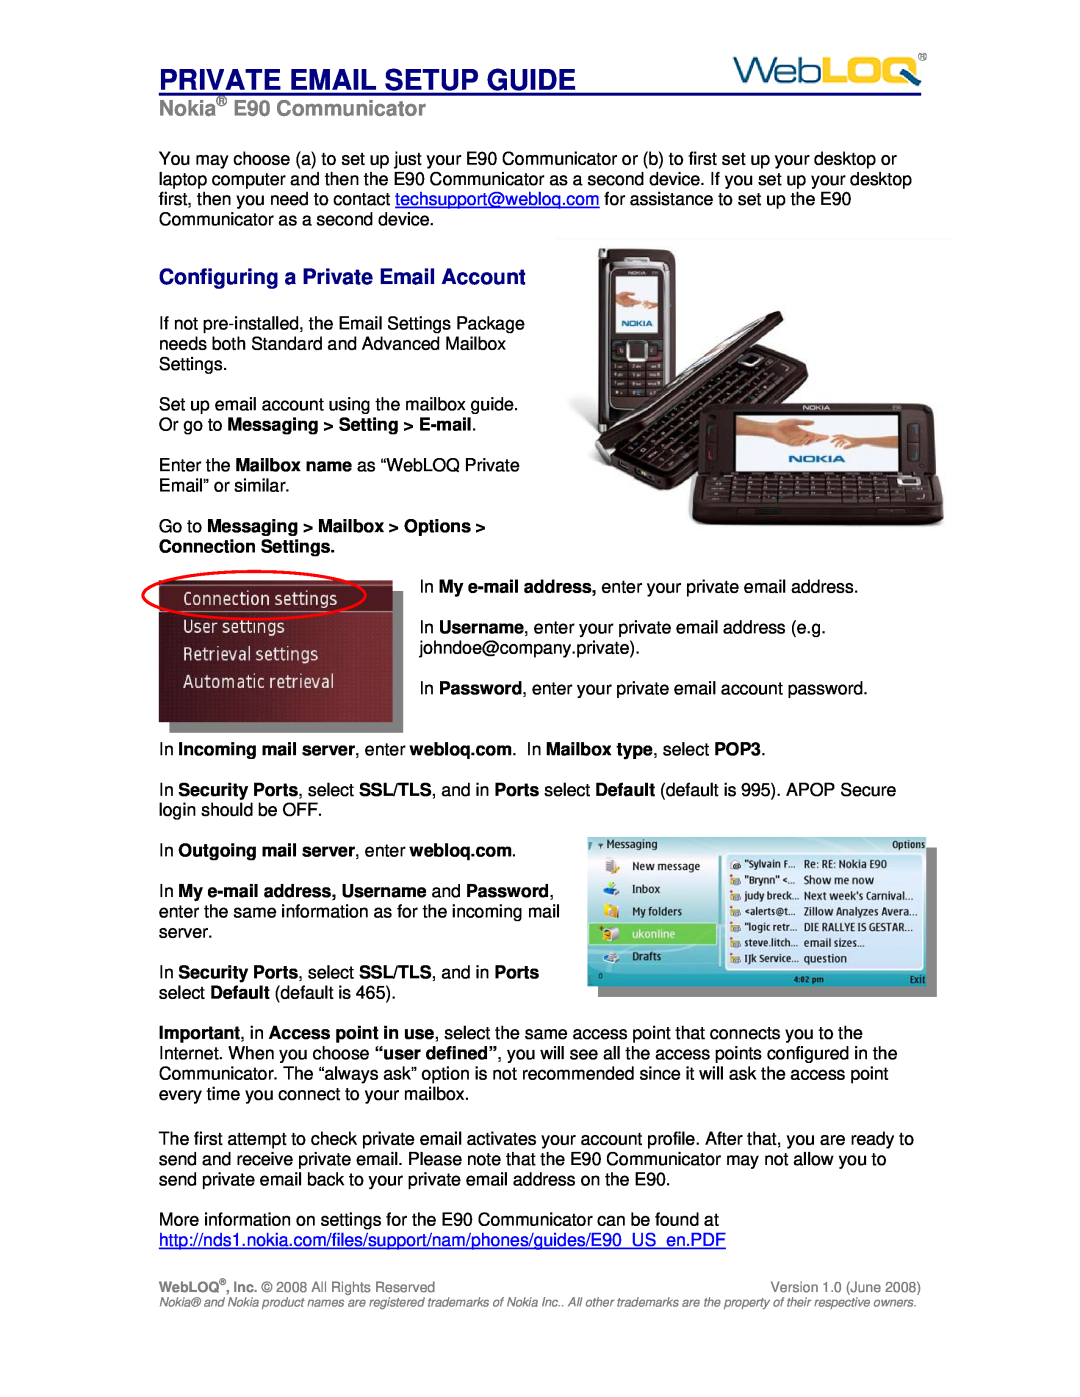 Nokia setup guide Private Email Setup Guide, Nokia E90 Communicator, Configuring a Private Email Account 